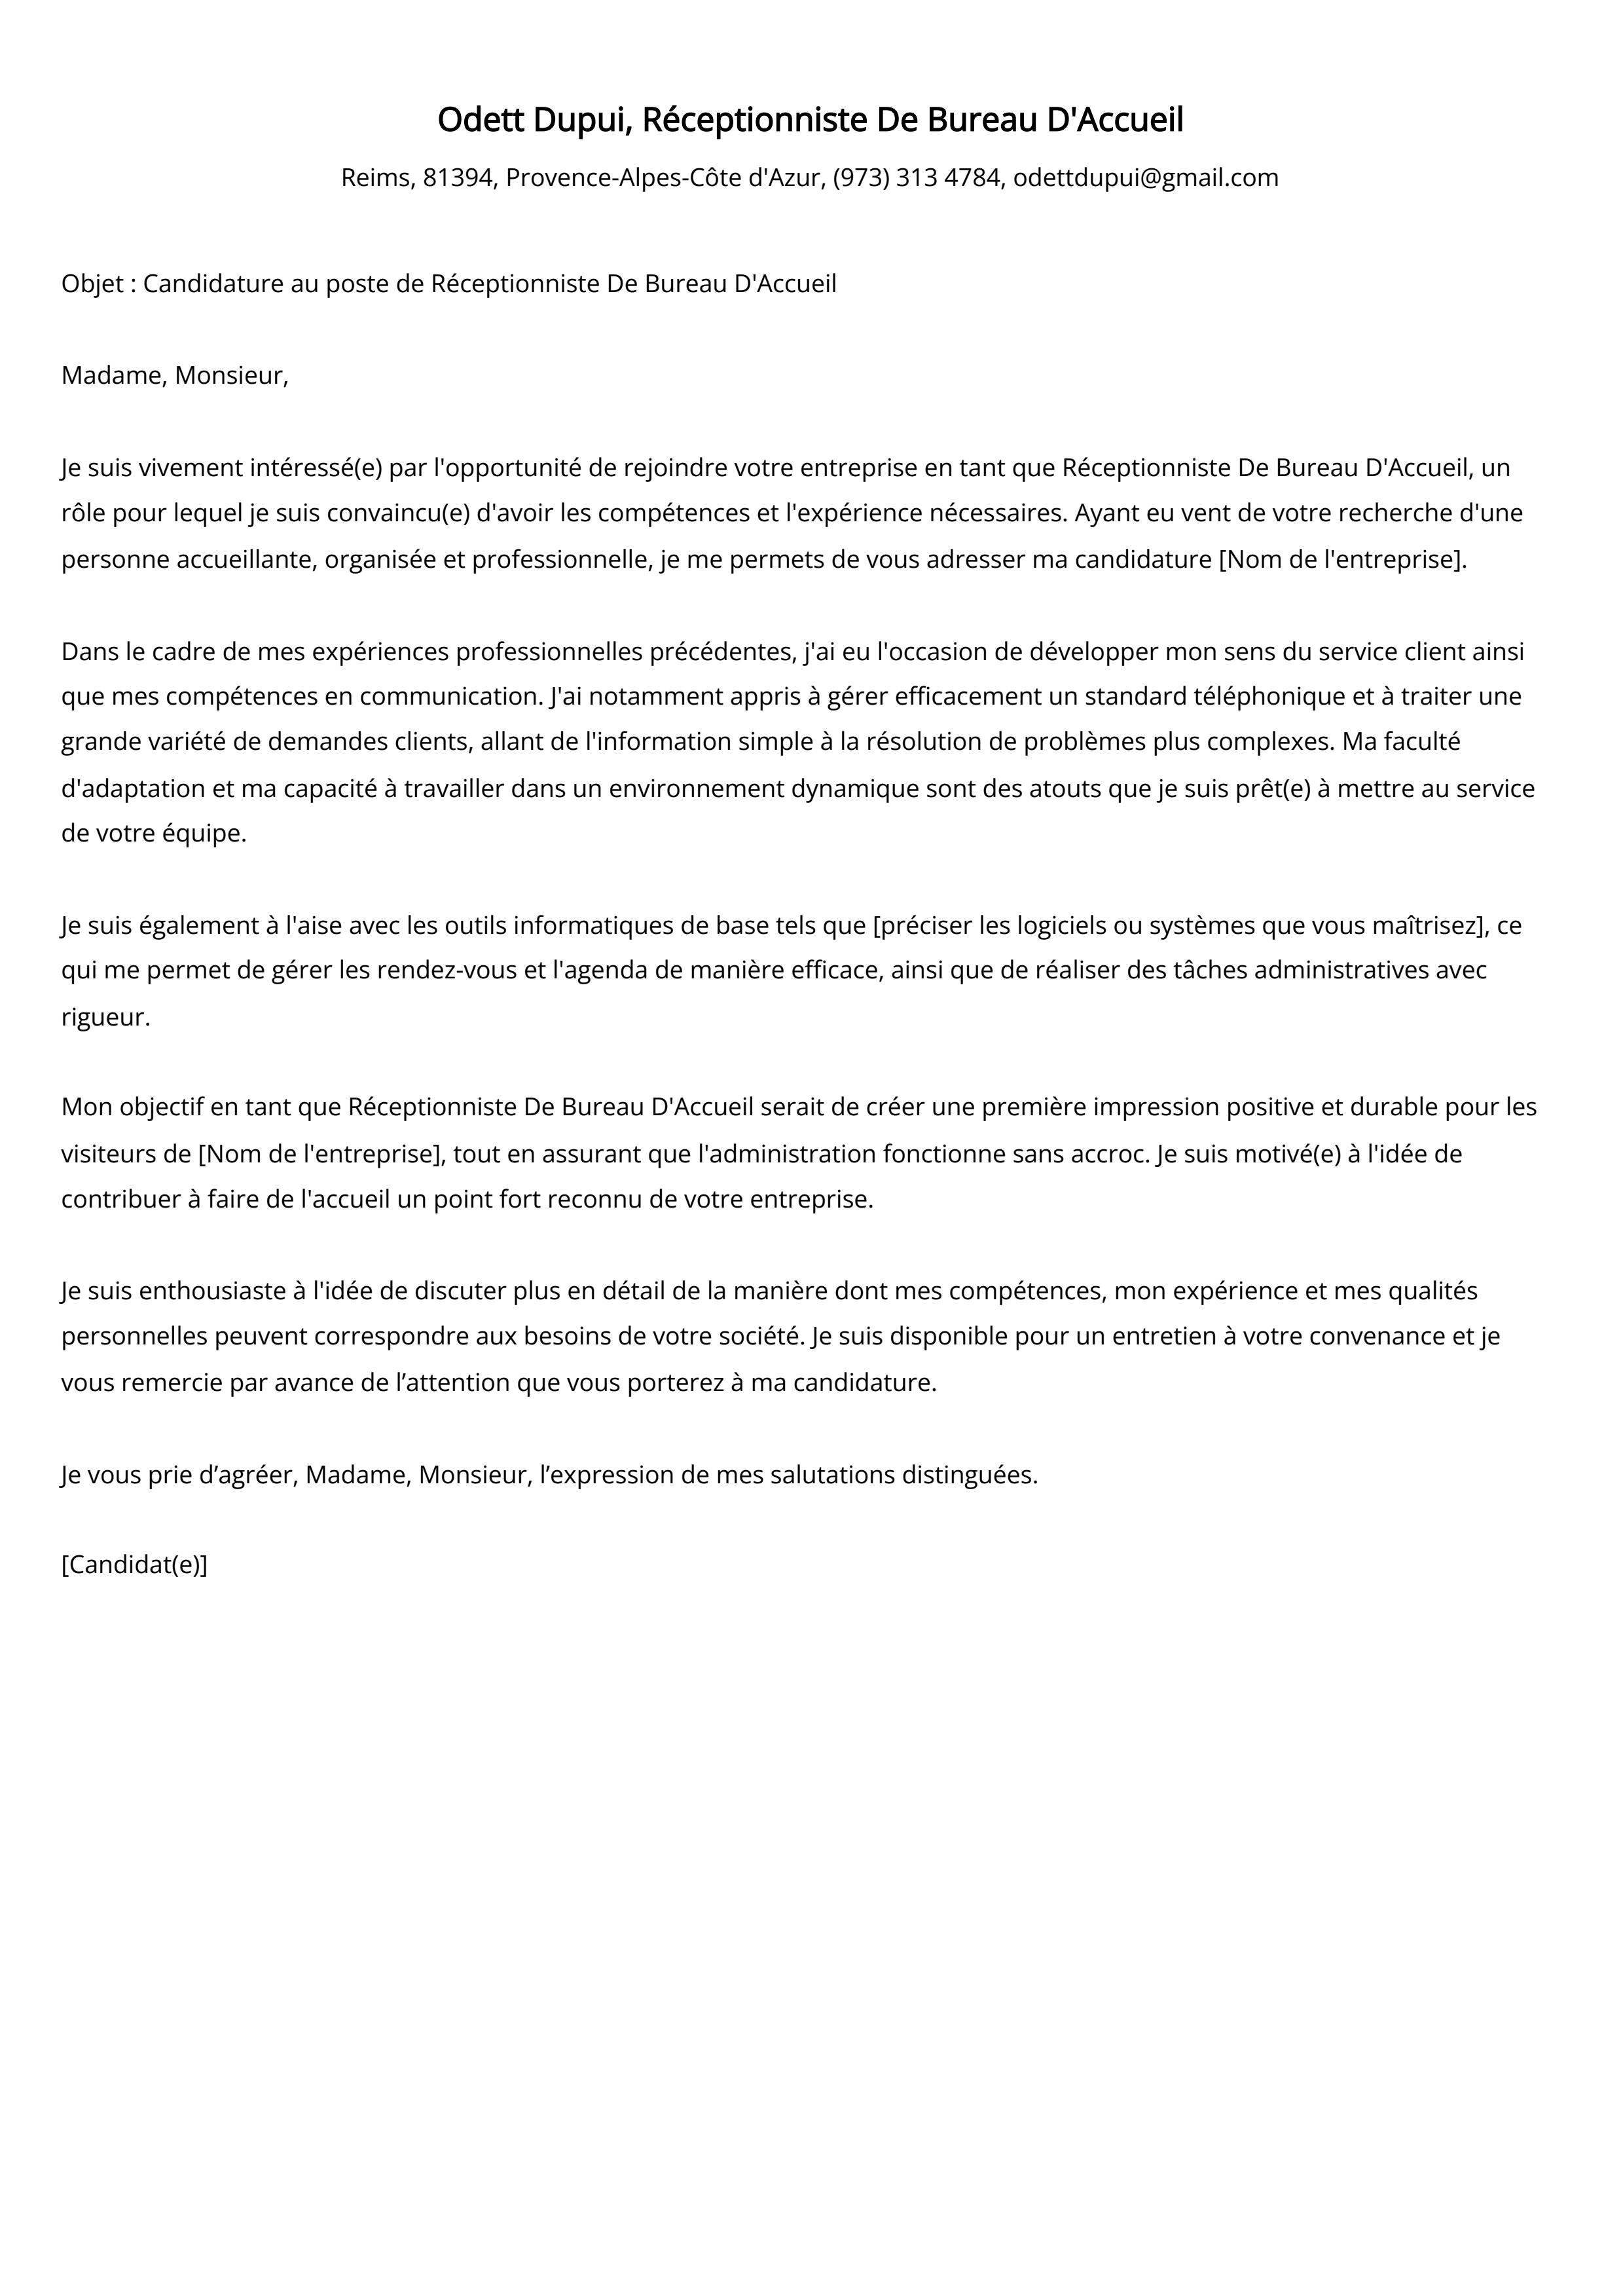 Réceptionniste De Bureau D'Accueil Cover Letter Example